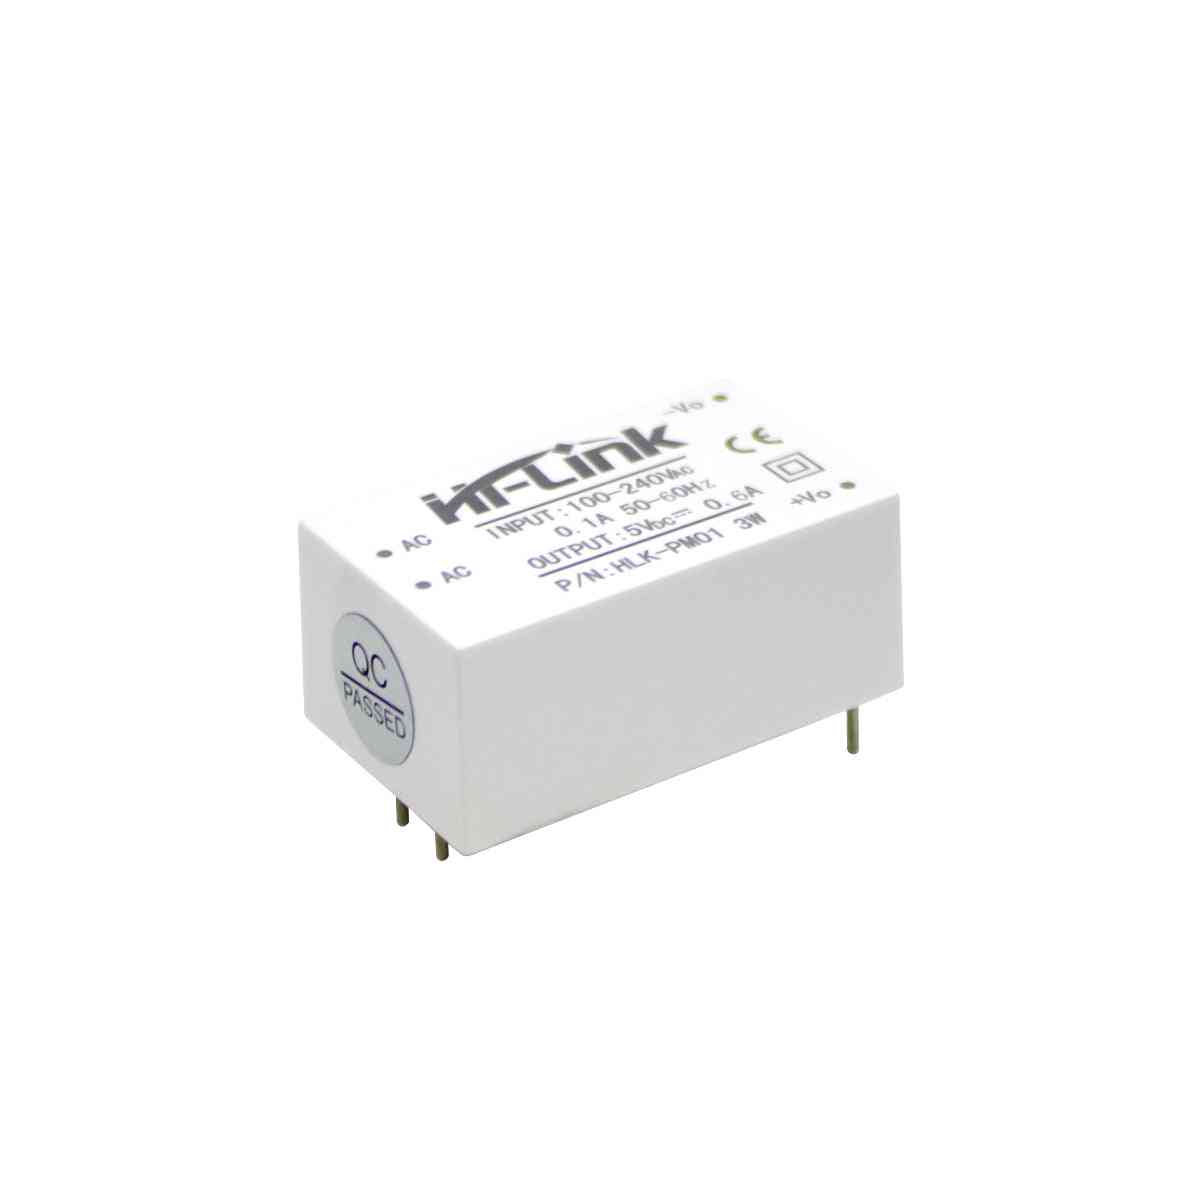 Smart-remote hlk-pm01 bianco modulo di alimentazione ac / dc -